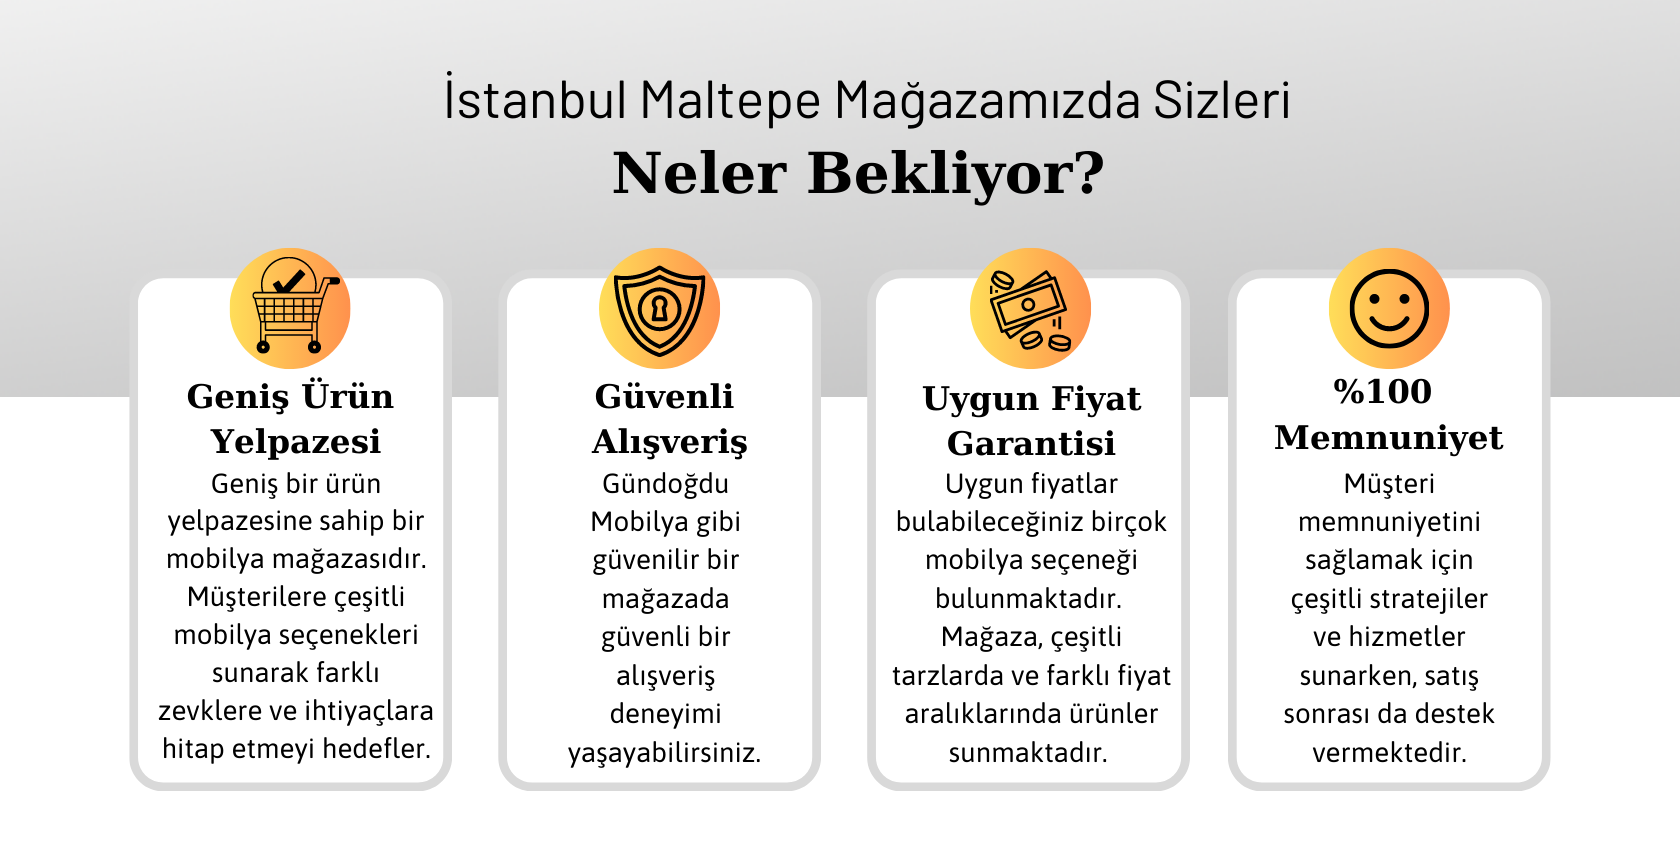 İstanbul Maltepe Mağazamızla İlgili Detaylar